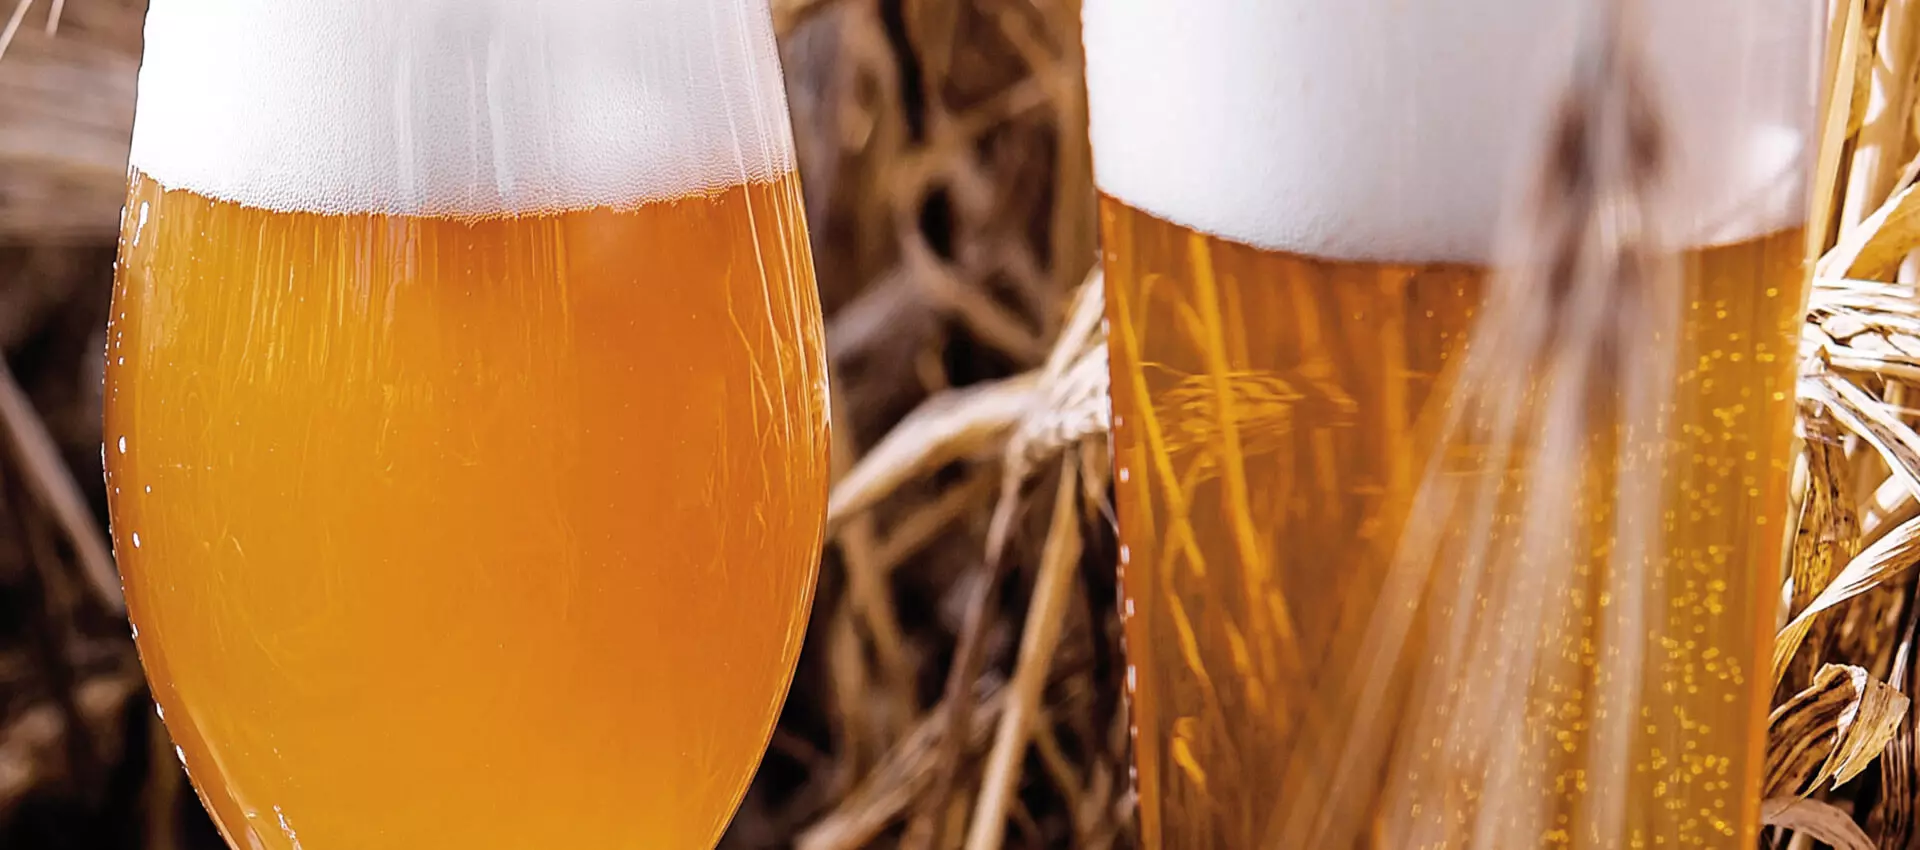 Links ein ungefiltertes Bier, rechts ein klares, transparentes Bier, jeweils eingeschenkt im Glas, vor einem Strohhintergrund.